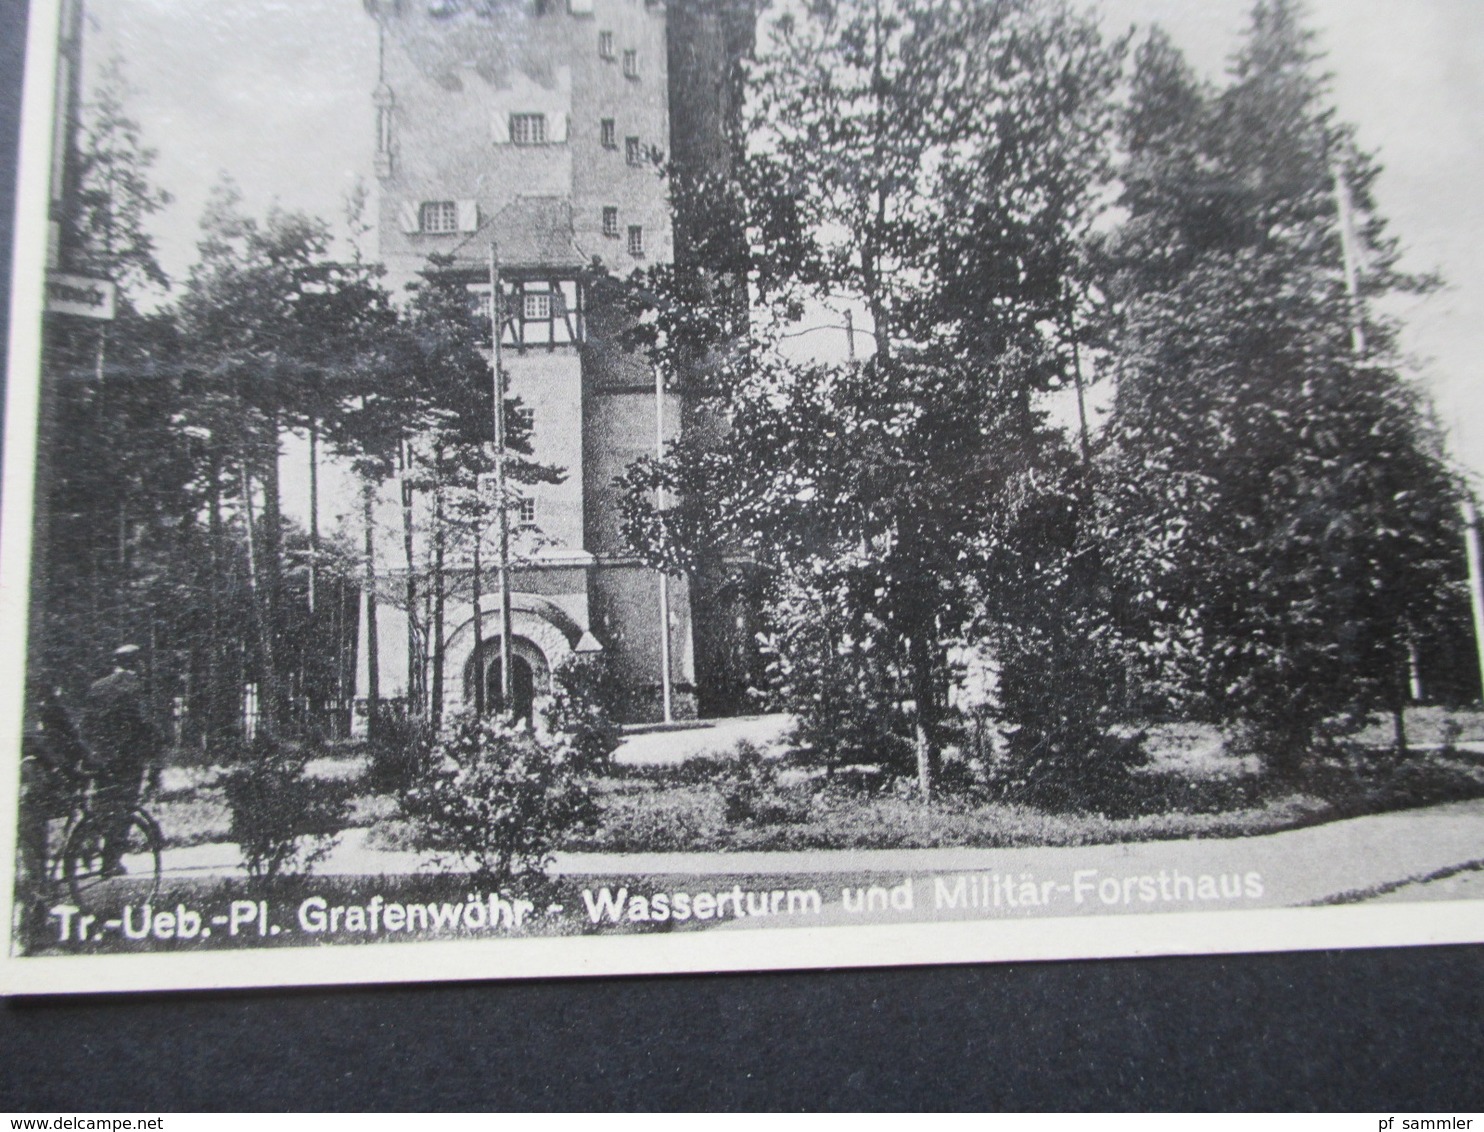 AK 1935 Ruppenübungsplatz Grafenwöhr Wasserturm Und Militär Forsthaus Photokunst Ernst Greiner Oberpfalz - Grafenwöhr